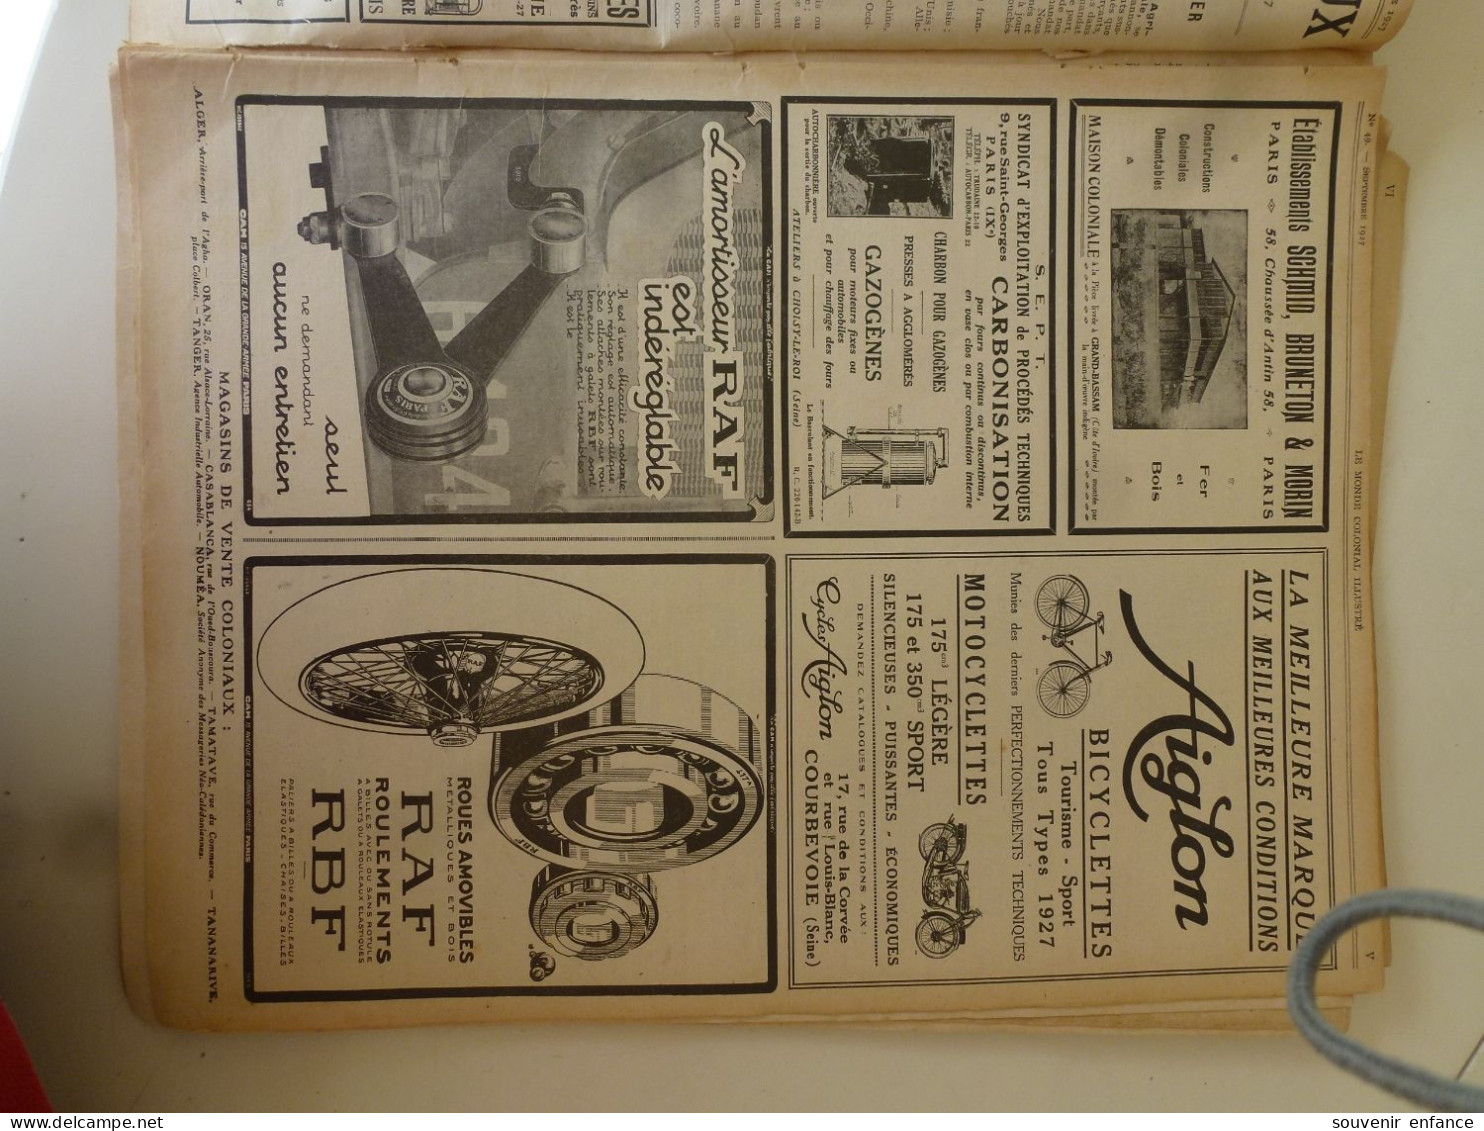 Lot d'Anciennes Publicités Extraites du Monde Colonial Illustré 1927 Burberrys Peter Pan Photo Sport